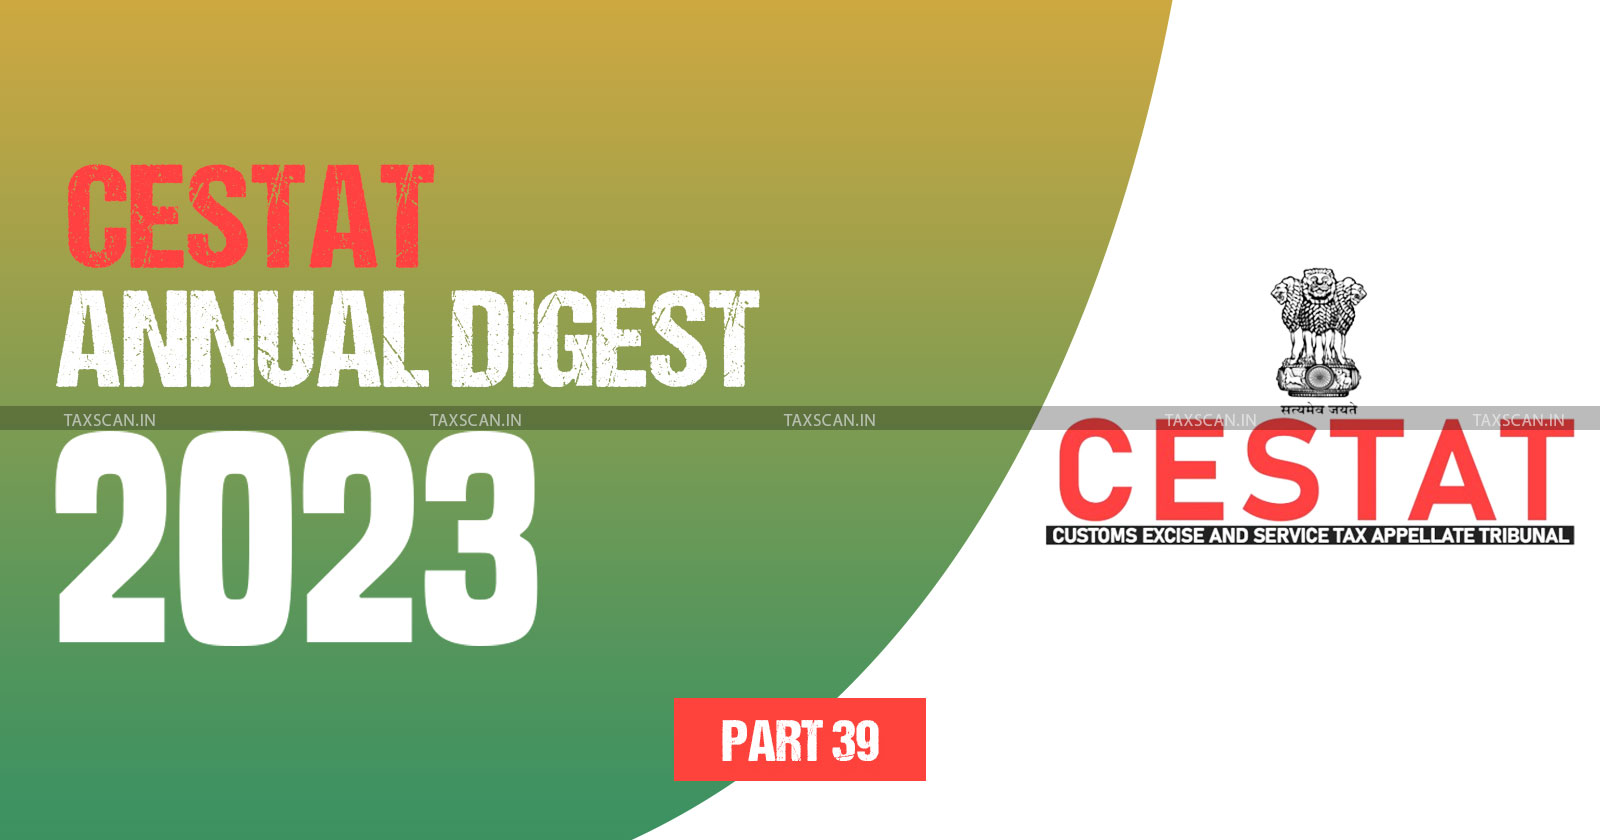 Annual Digest 2023 - CESTAT- Annual Digest 2023 - cestat -PART 39 - TAXSCAN